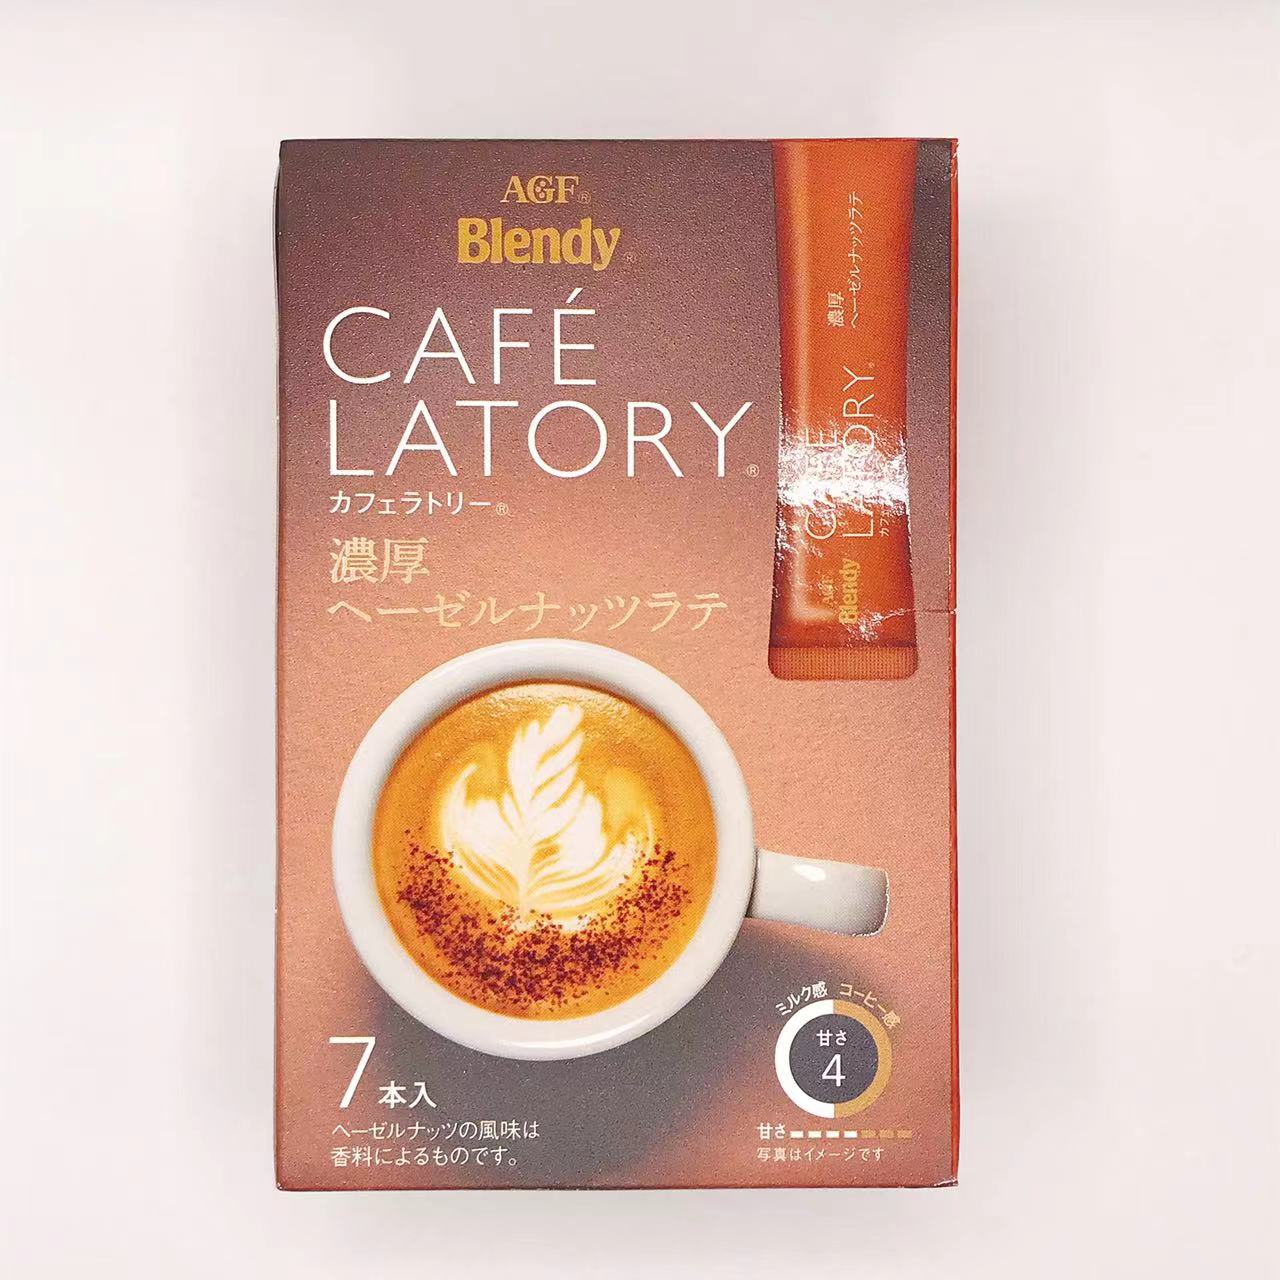 味之素AGF Blendy AGF Brendy Cafe Ratry Stick Coffee富含榛子螺母已故（10.5 G * 7）